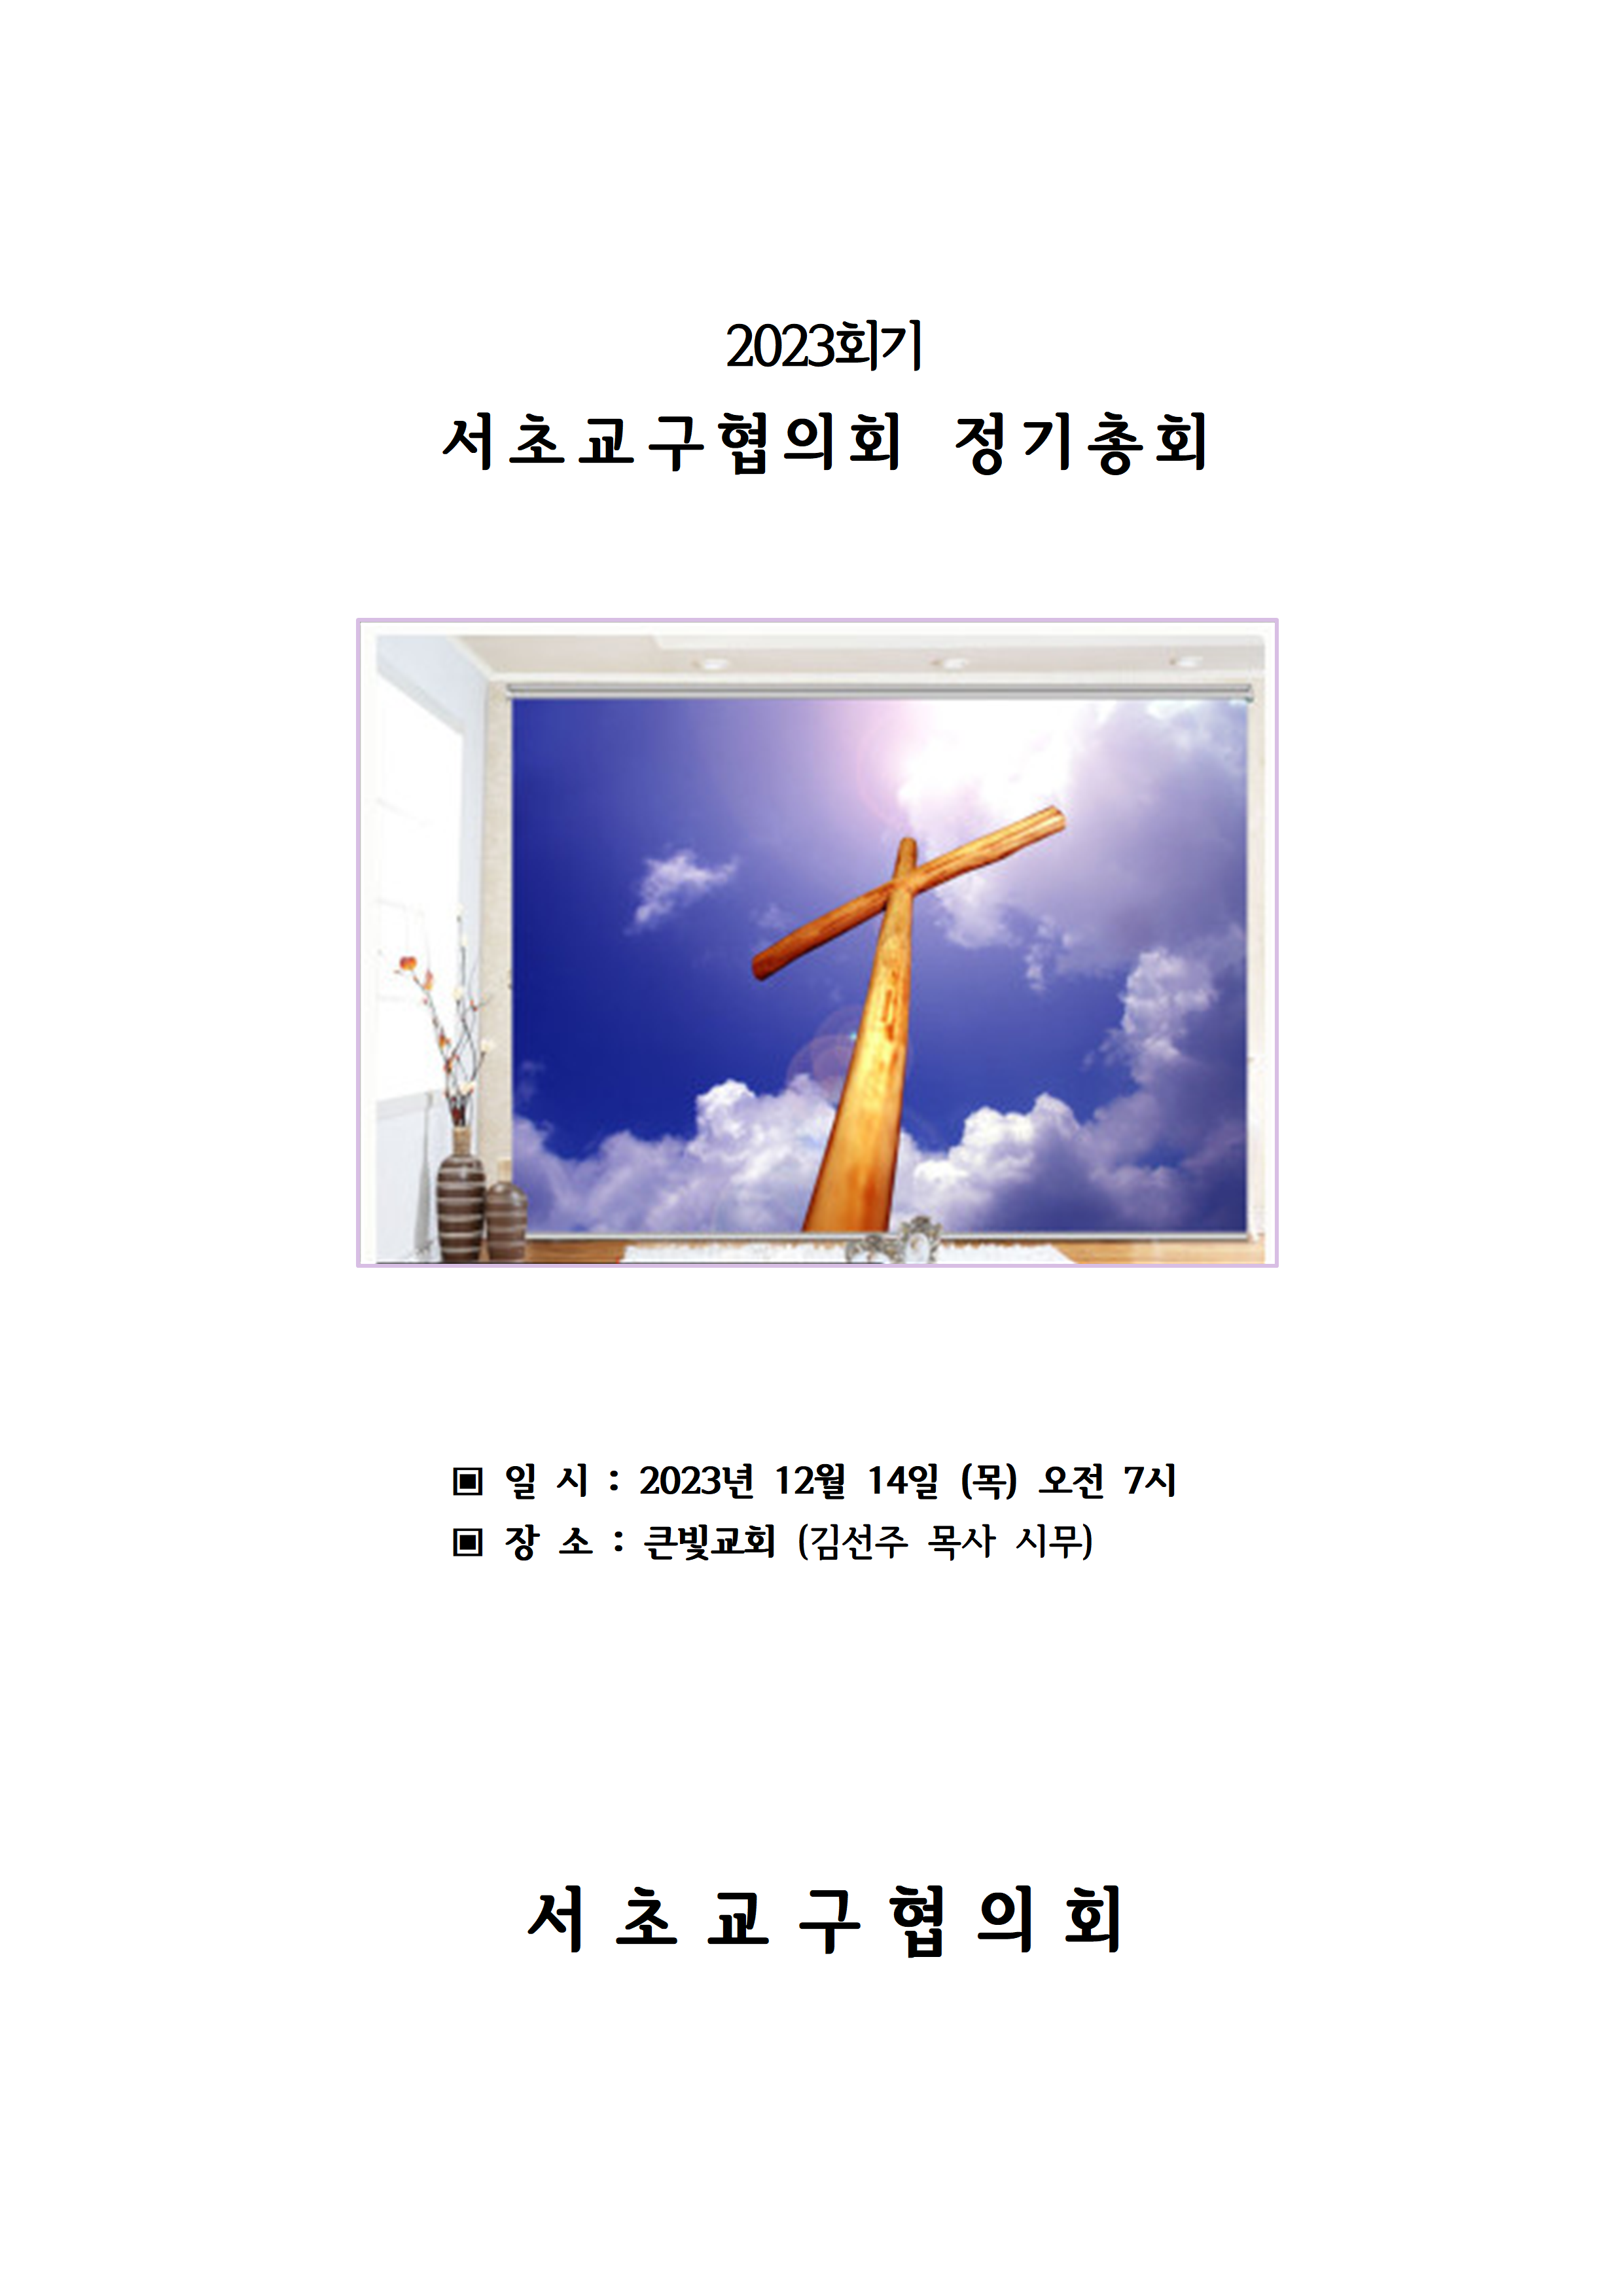 2023회기 서초교구협의회 정기총회자료(12.14.)001.png